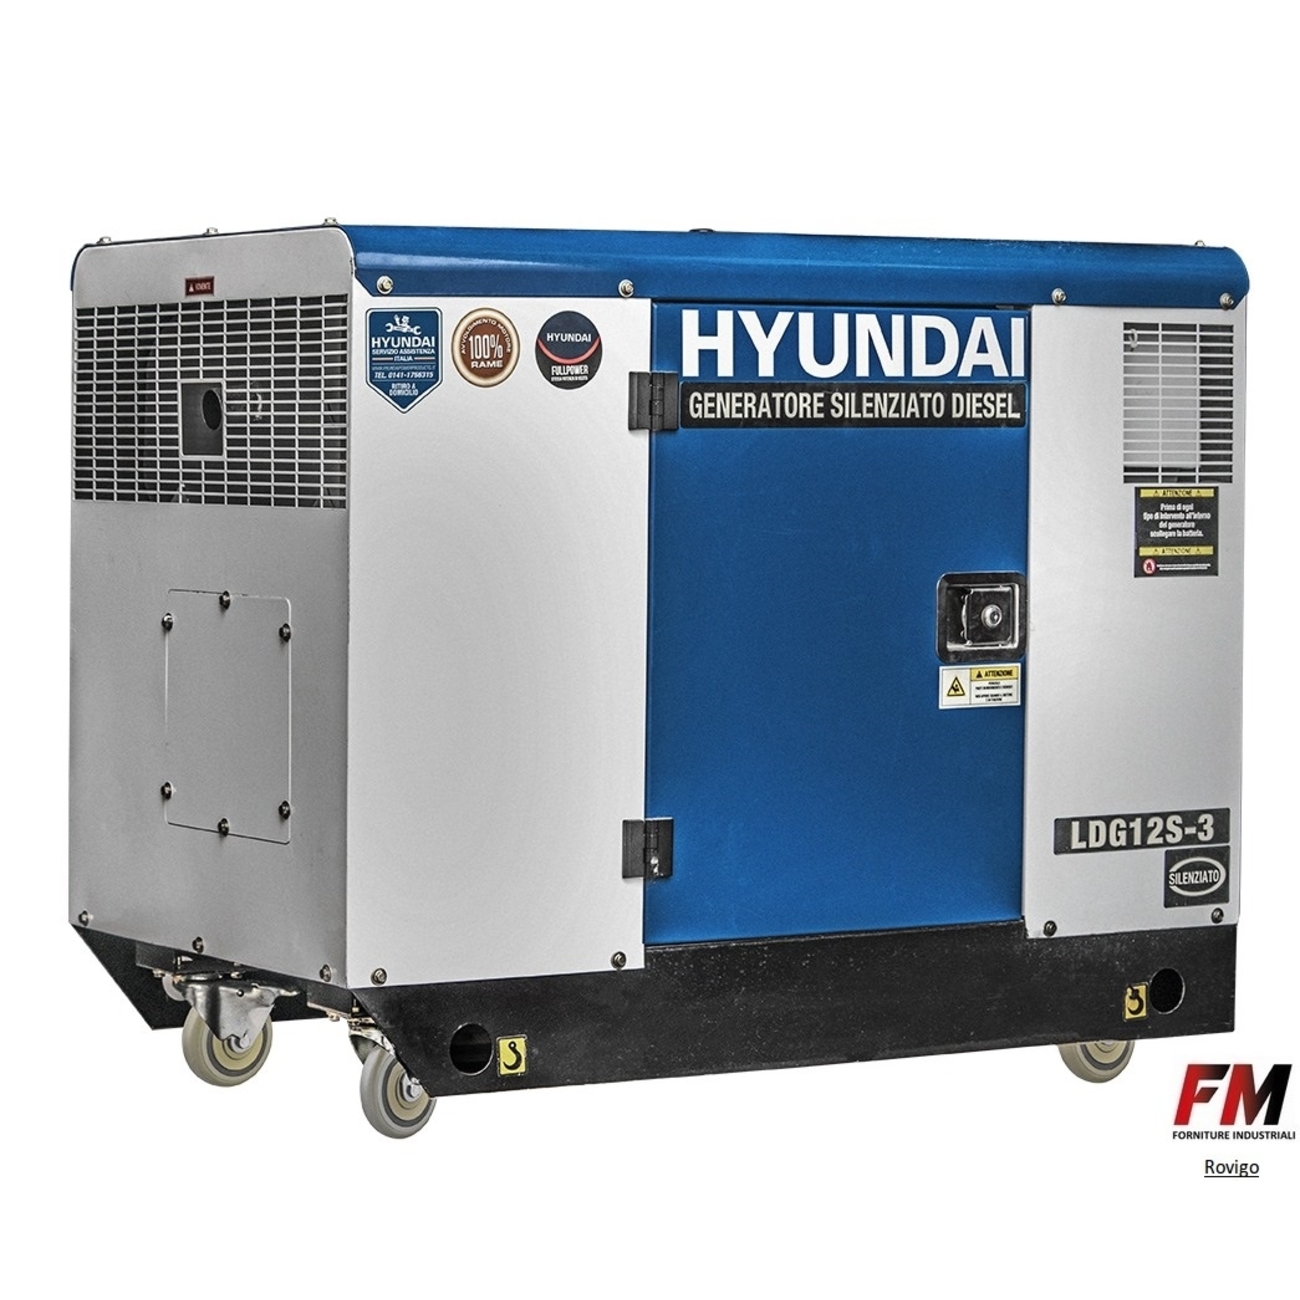 Generatore Hyundai Diesel 11Kw